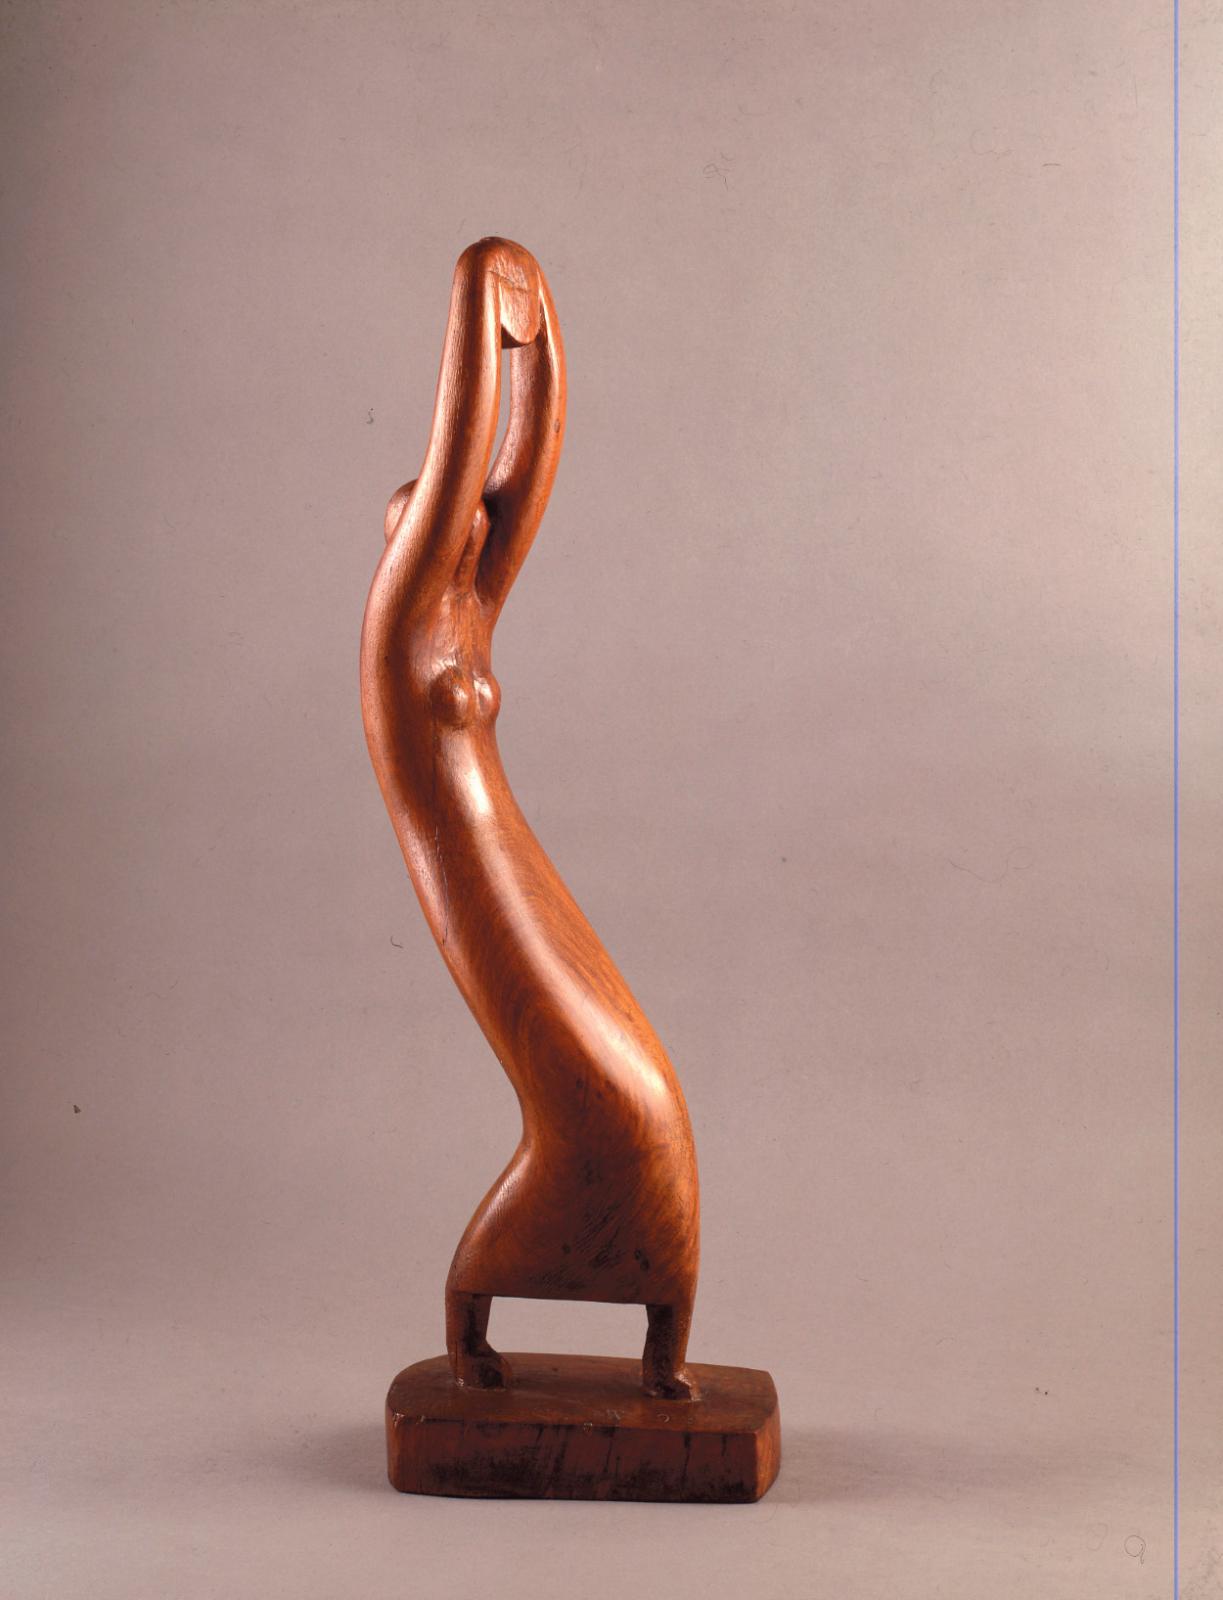 Les sculptures de Chana Orloff au musée Zadkine